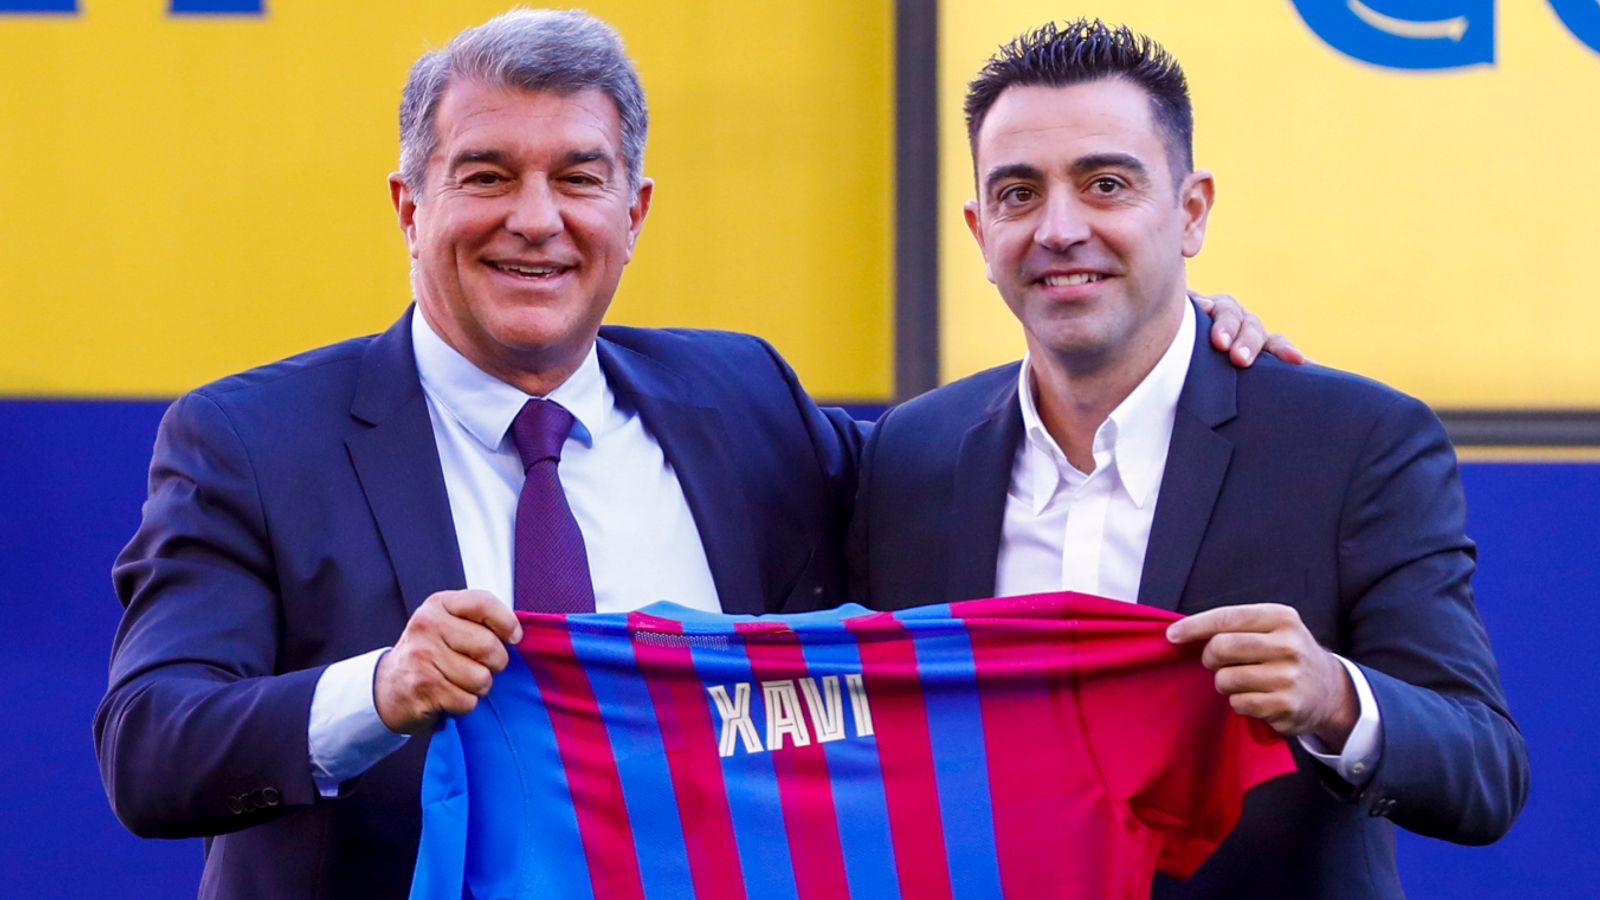 Xavi en la inauguración como entrenador del Barcelona: vengo preparado, tenemos que ganarlo todo | Noticias de futbol - Noticias Ultimas